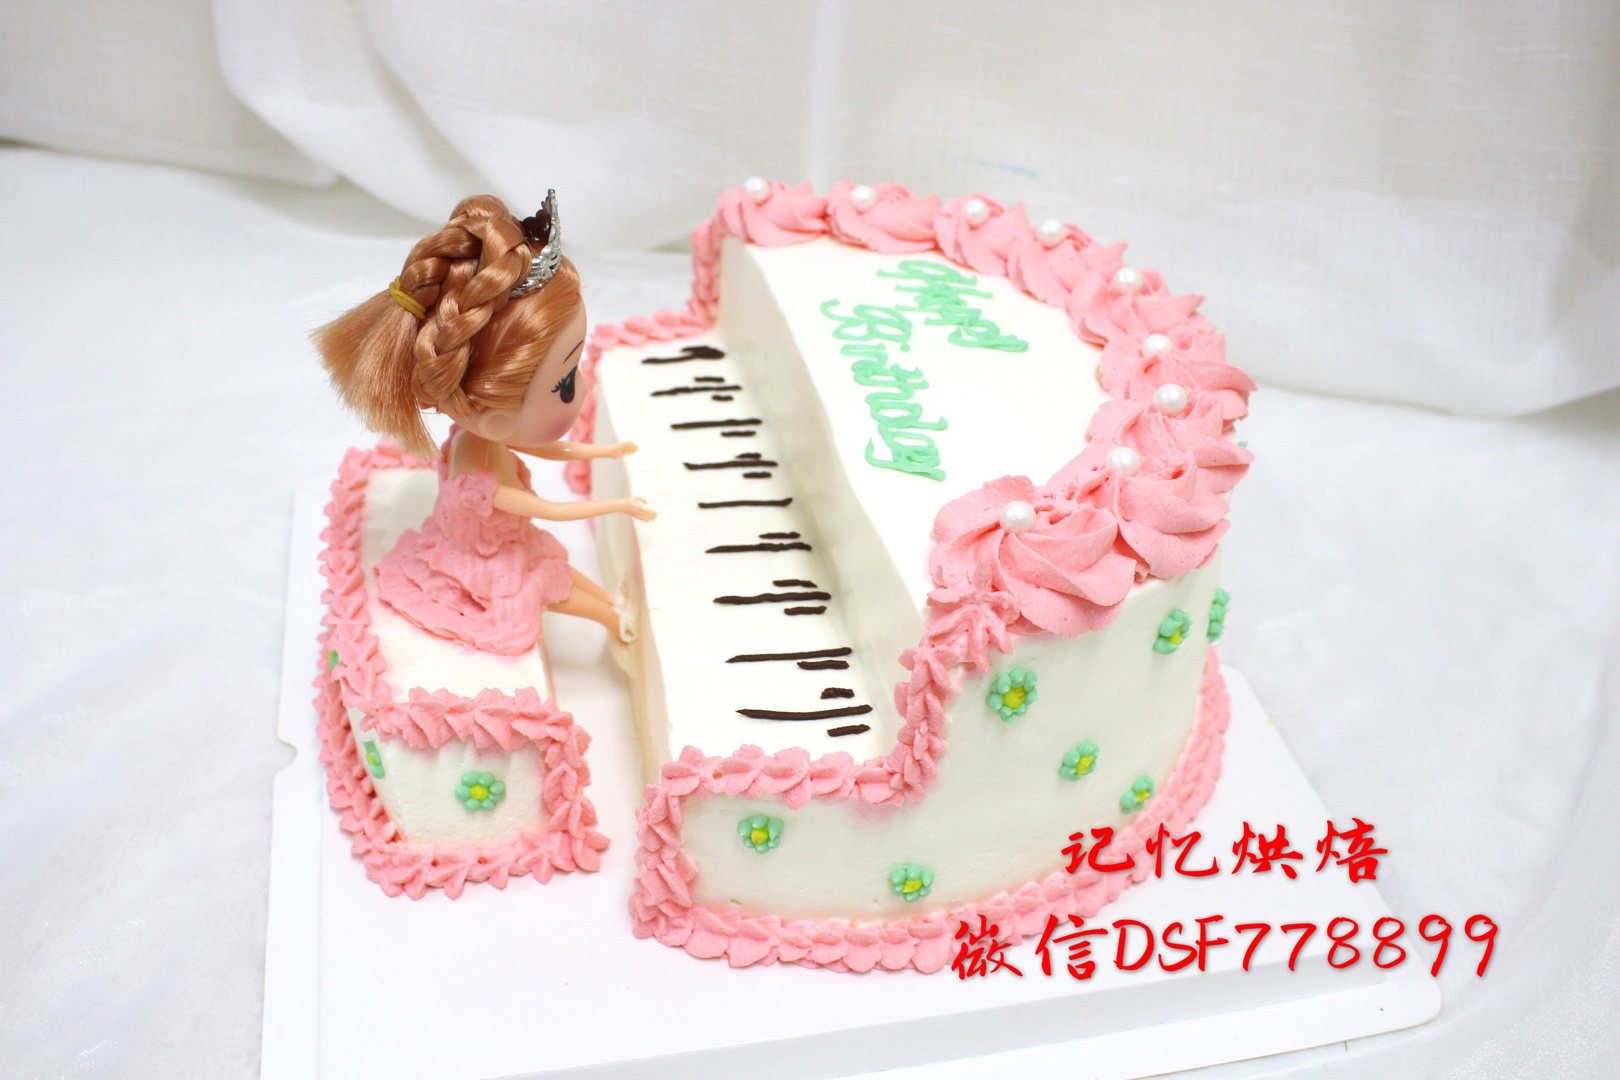 钢琴蛋糕 异形蛋糕的做法